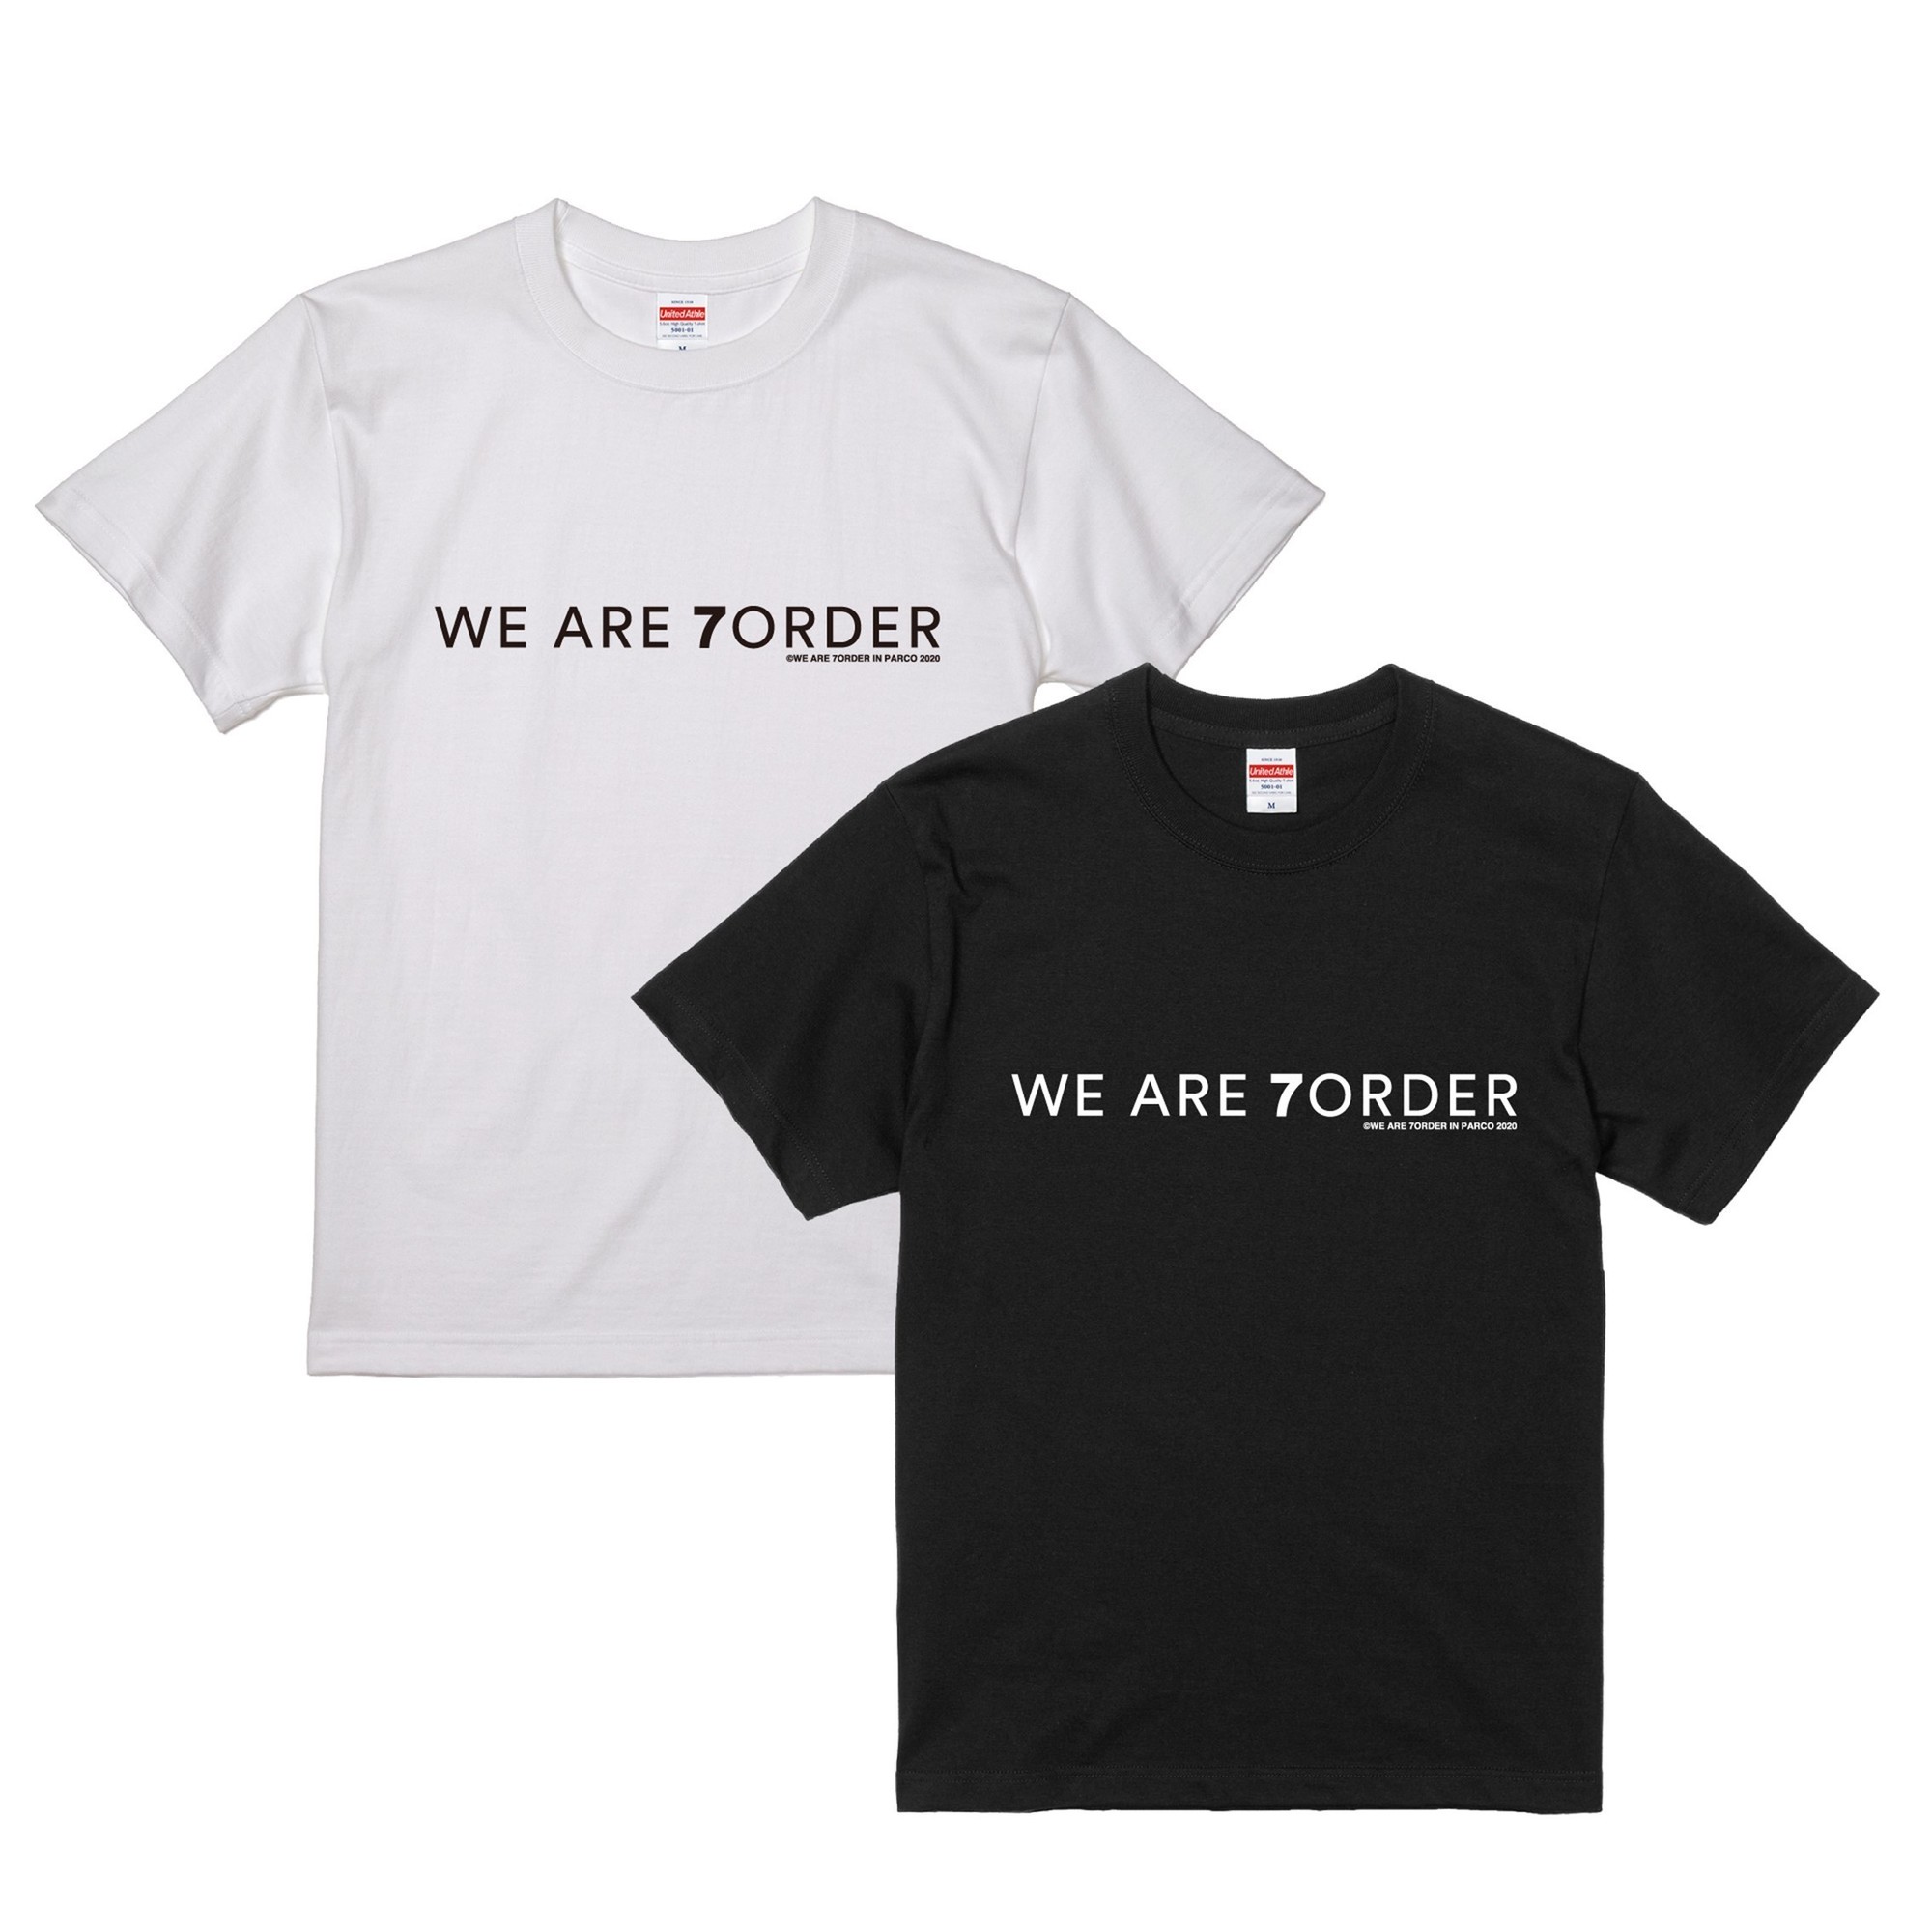 注目ブランドのギフト 7ORDER Tシャツ pillasport.ru